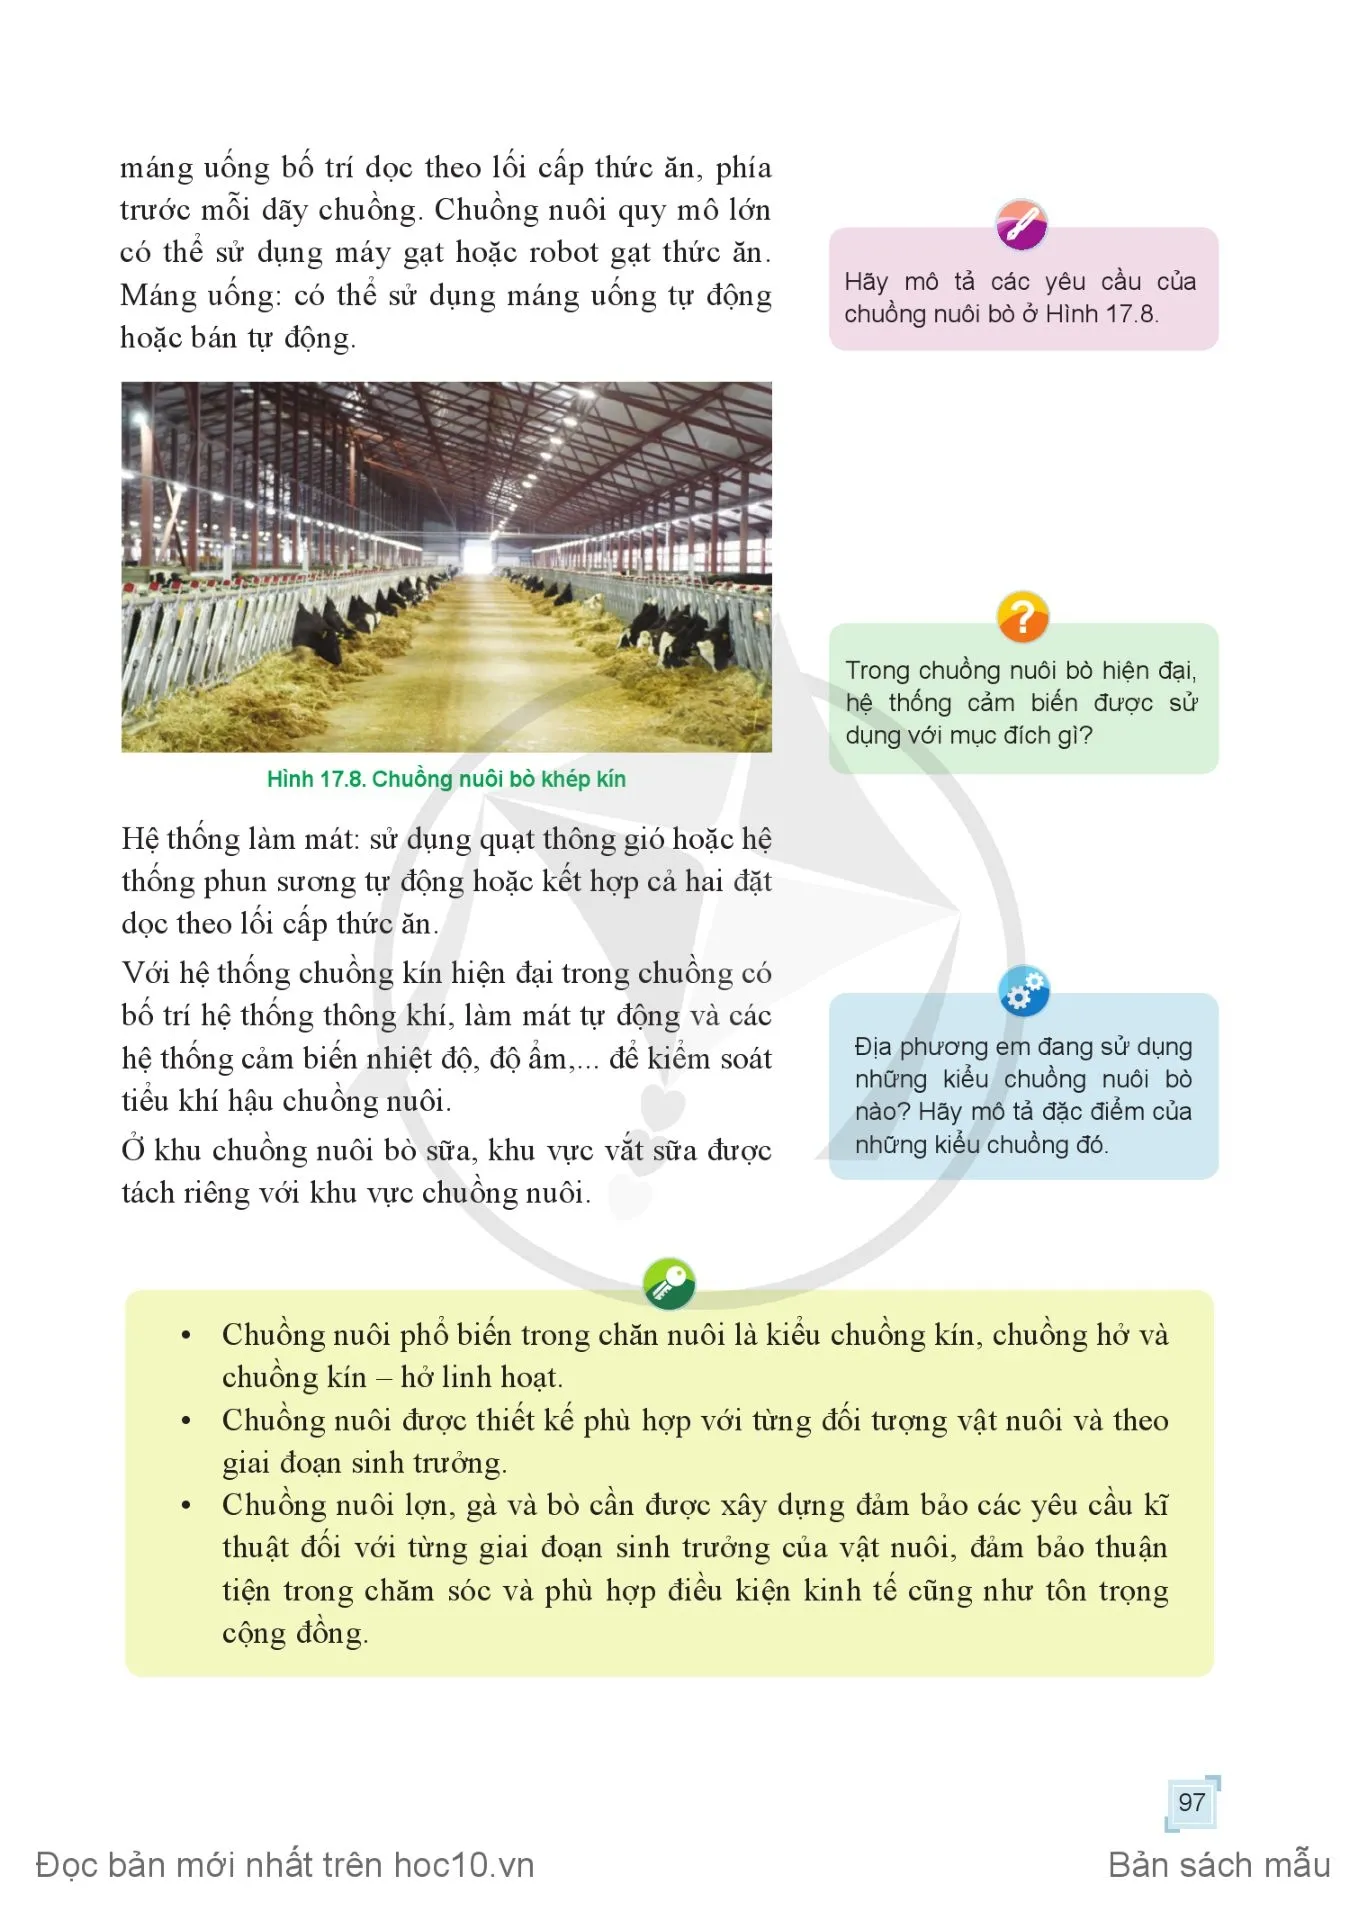 Bài 18. Quy trình nuôi dưỡng và chăm sóc một số loại vật nuôi